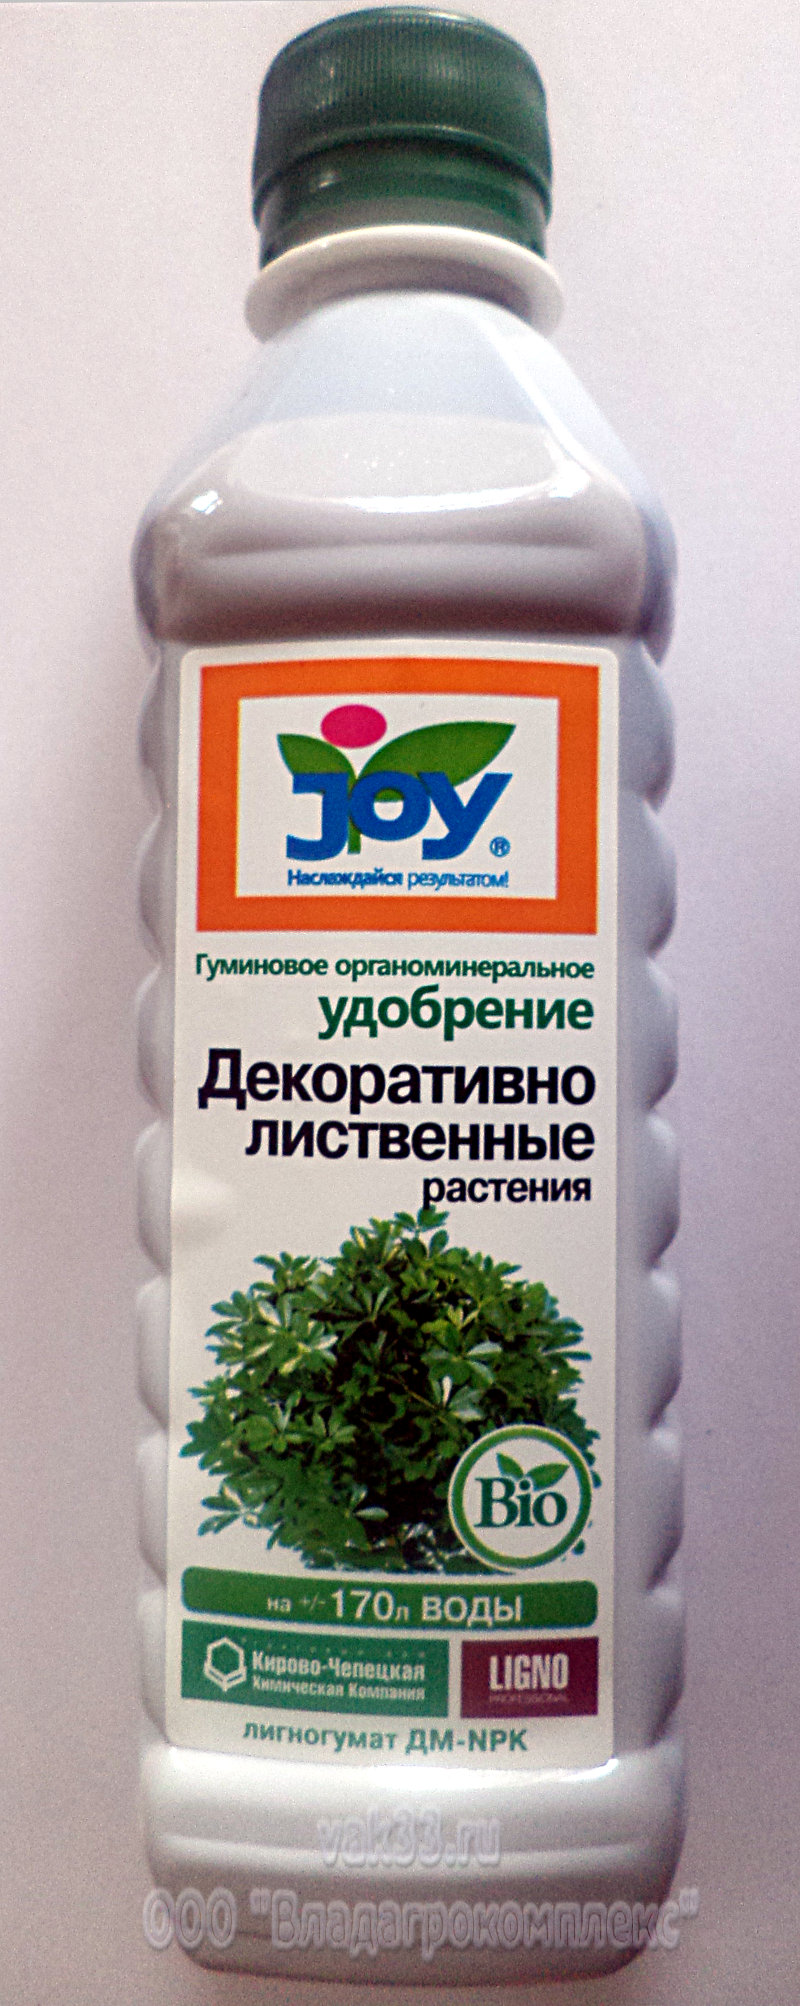 JOY Декоративно-лиственные растения - гуминовое органоминеральное удобрение